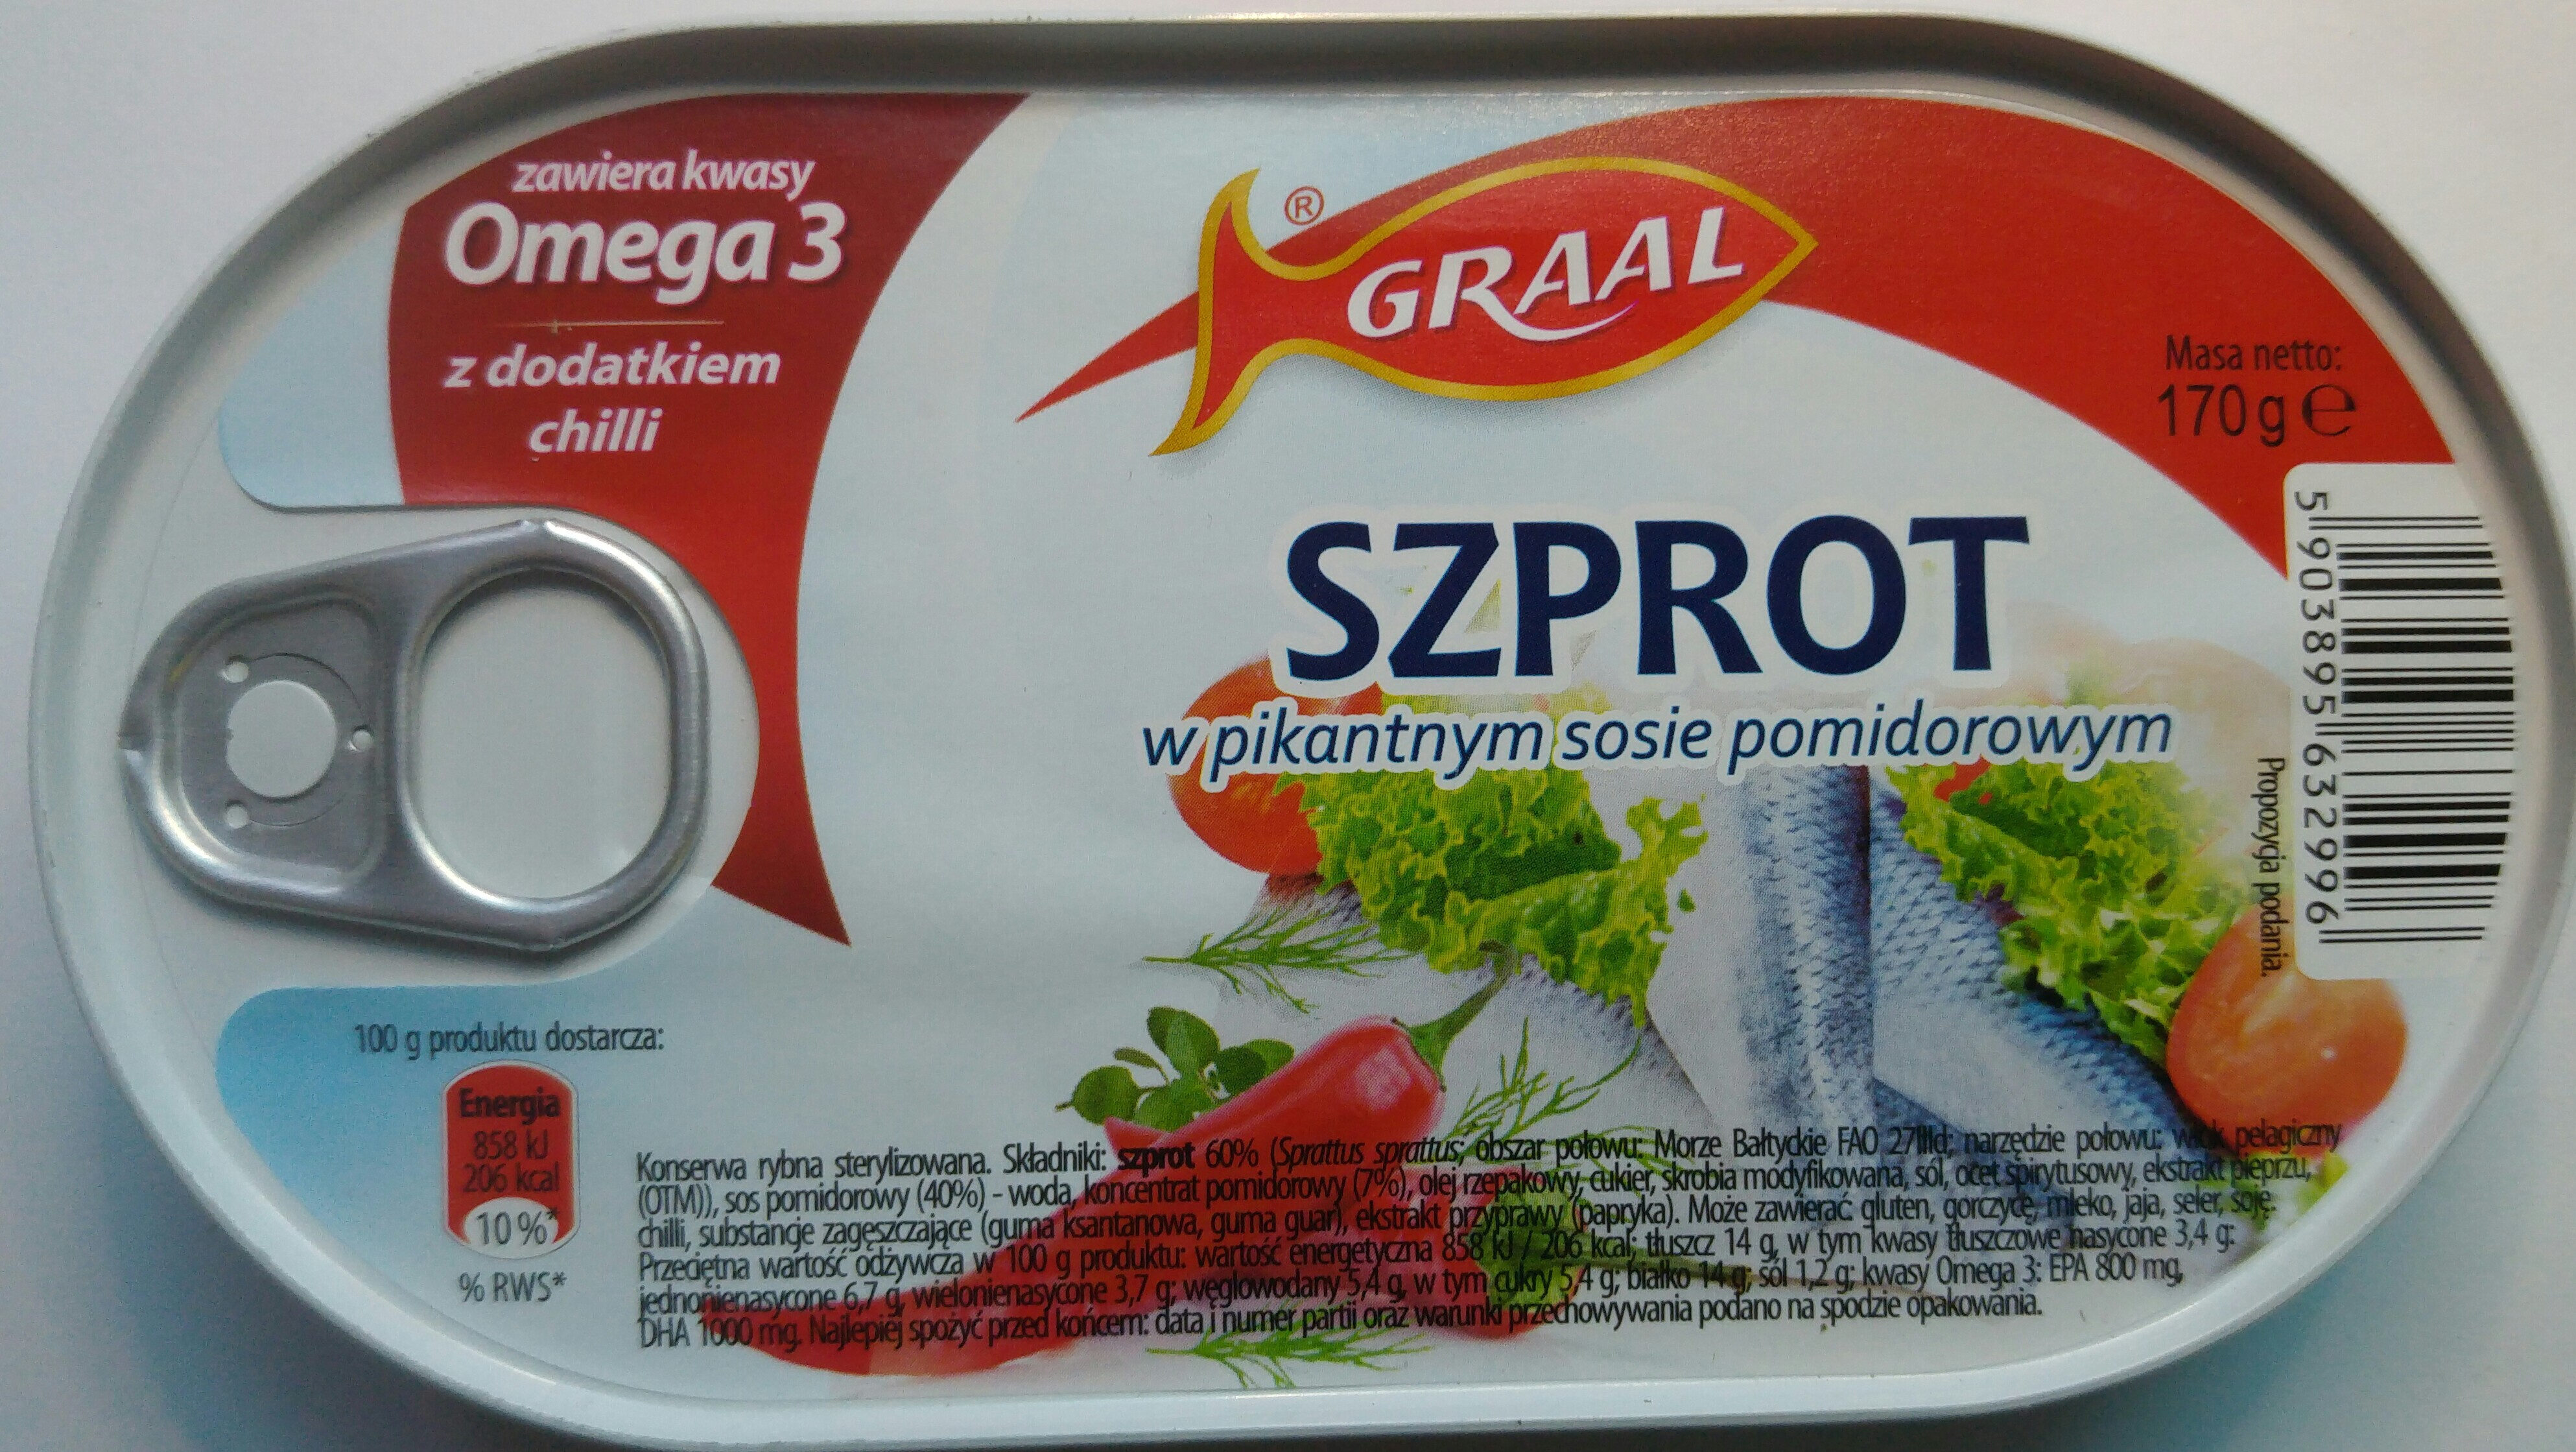 Szprot w pikantnym sosie pomidorowym. - Product - pl